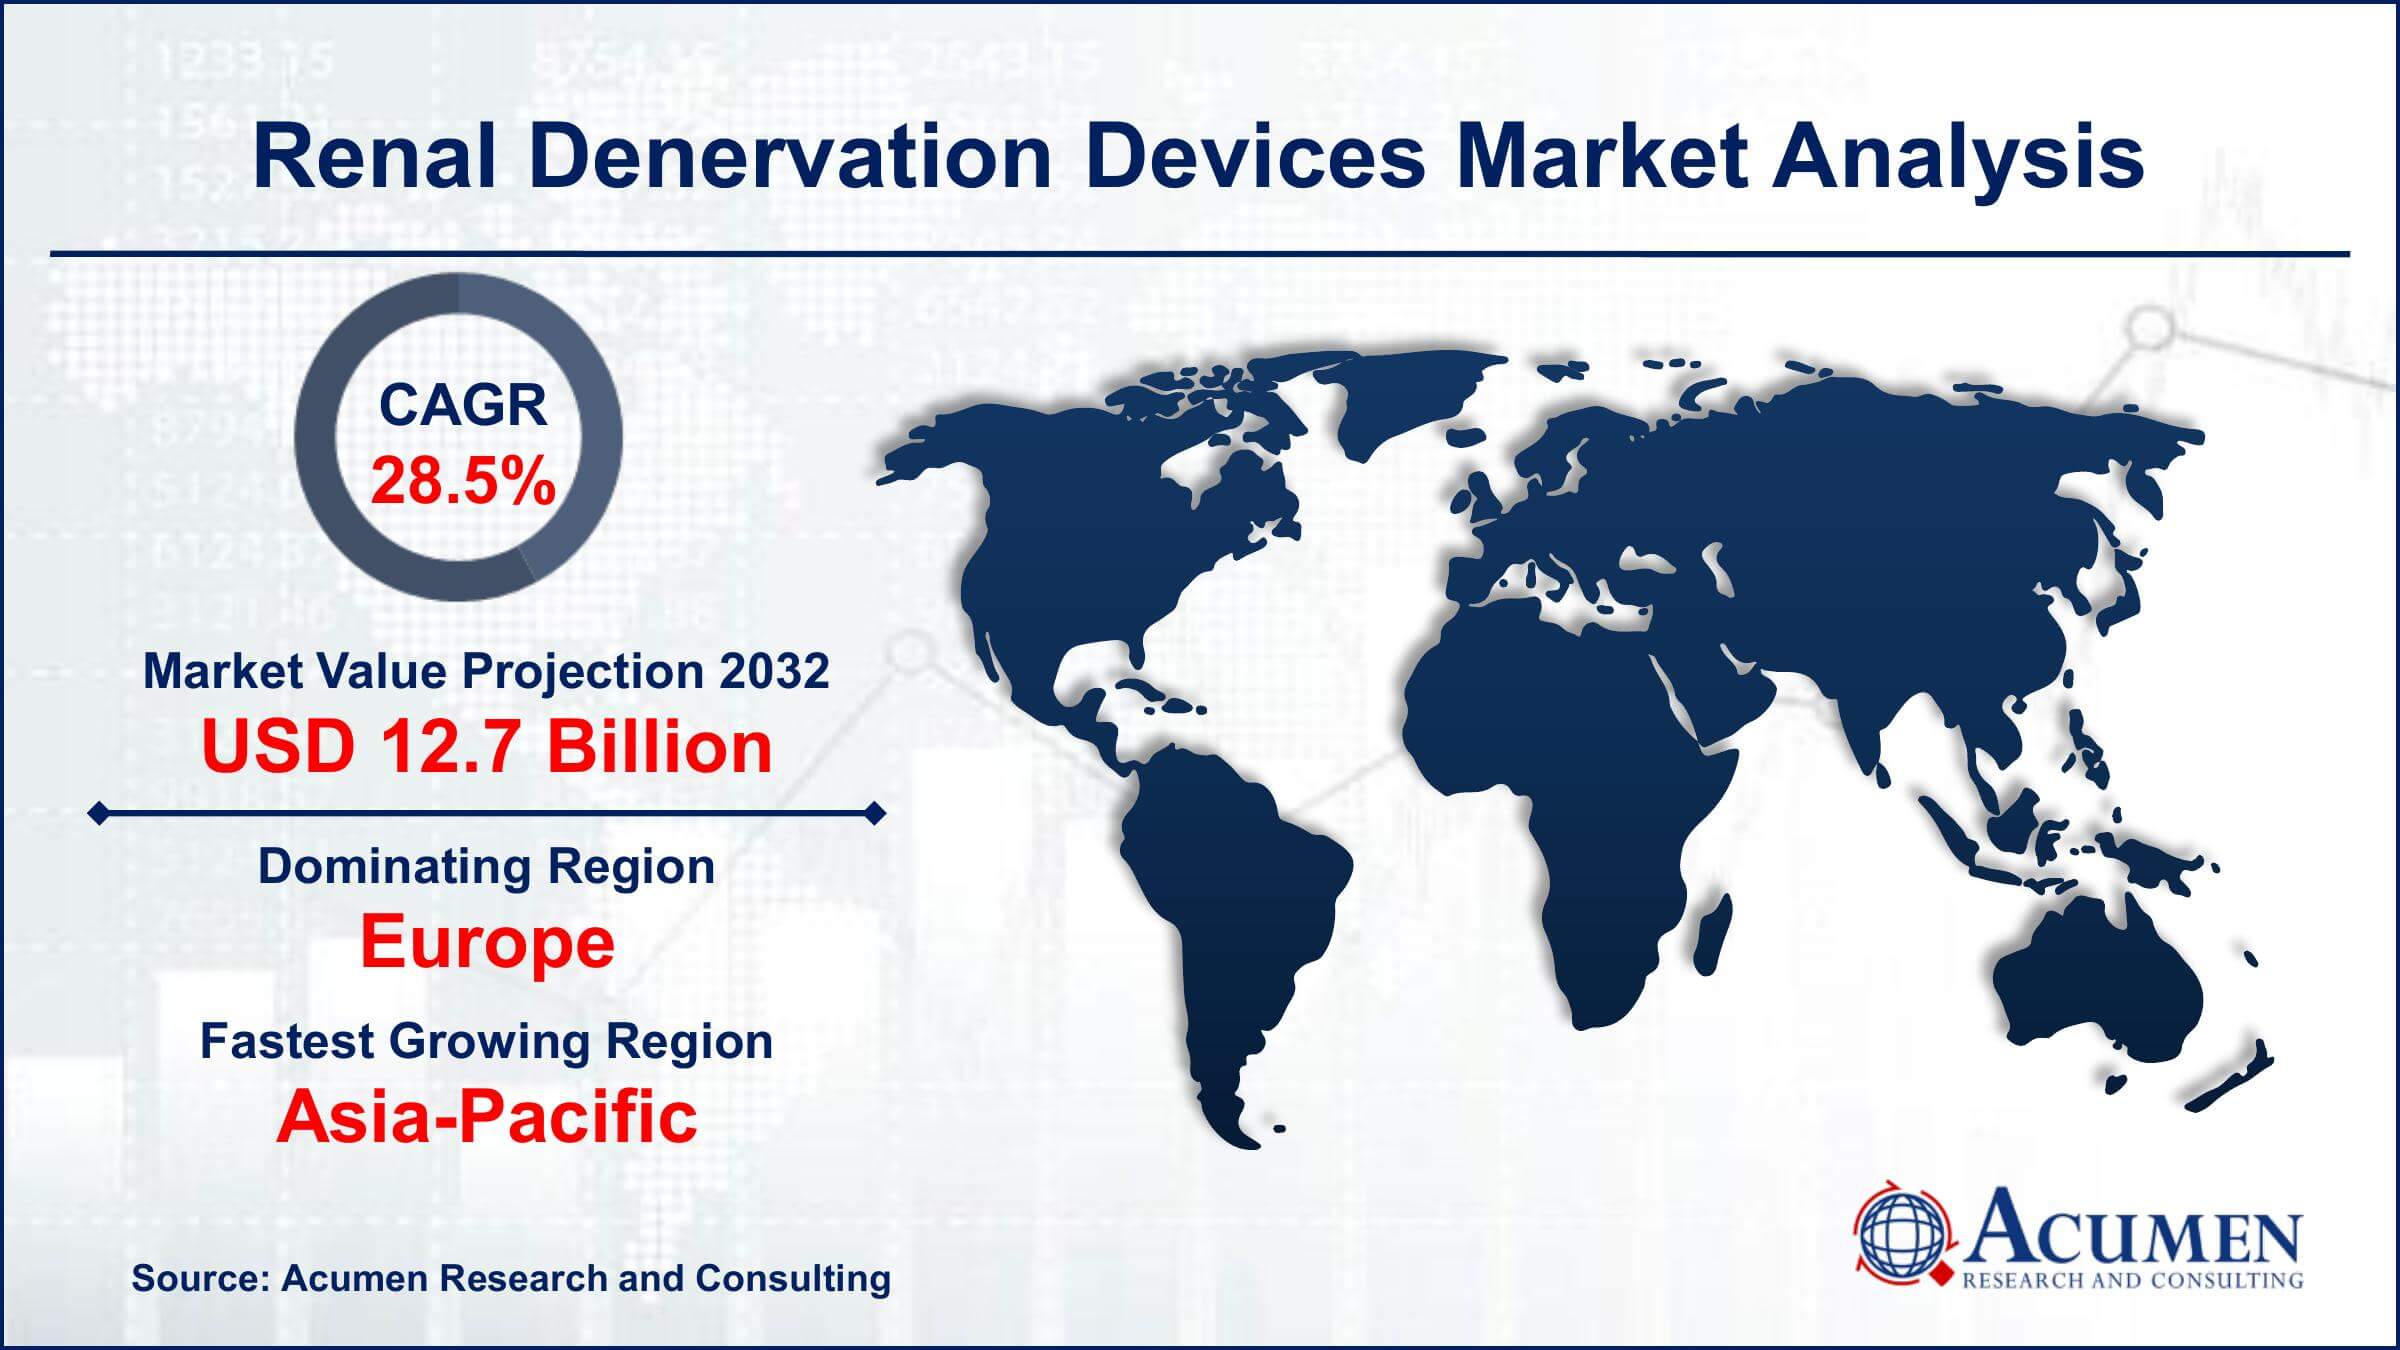 Global Renal Denervation Devices Market Trends